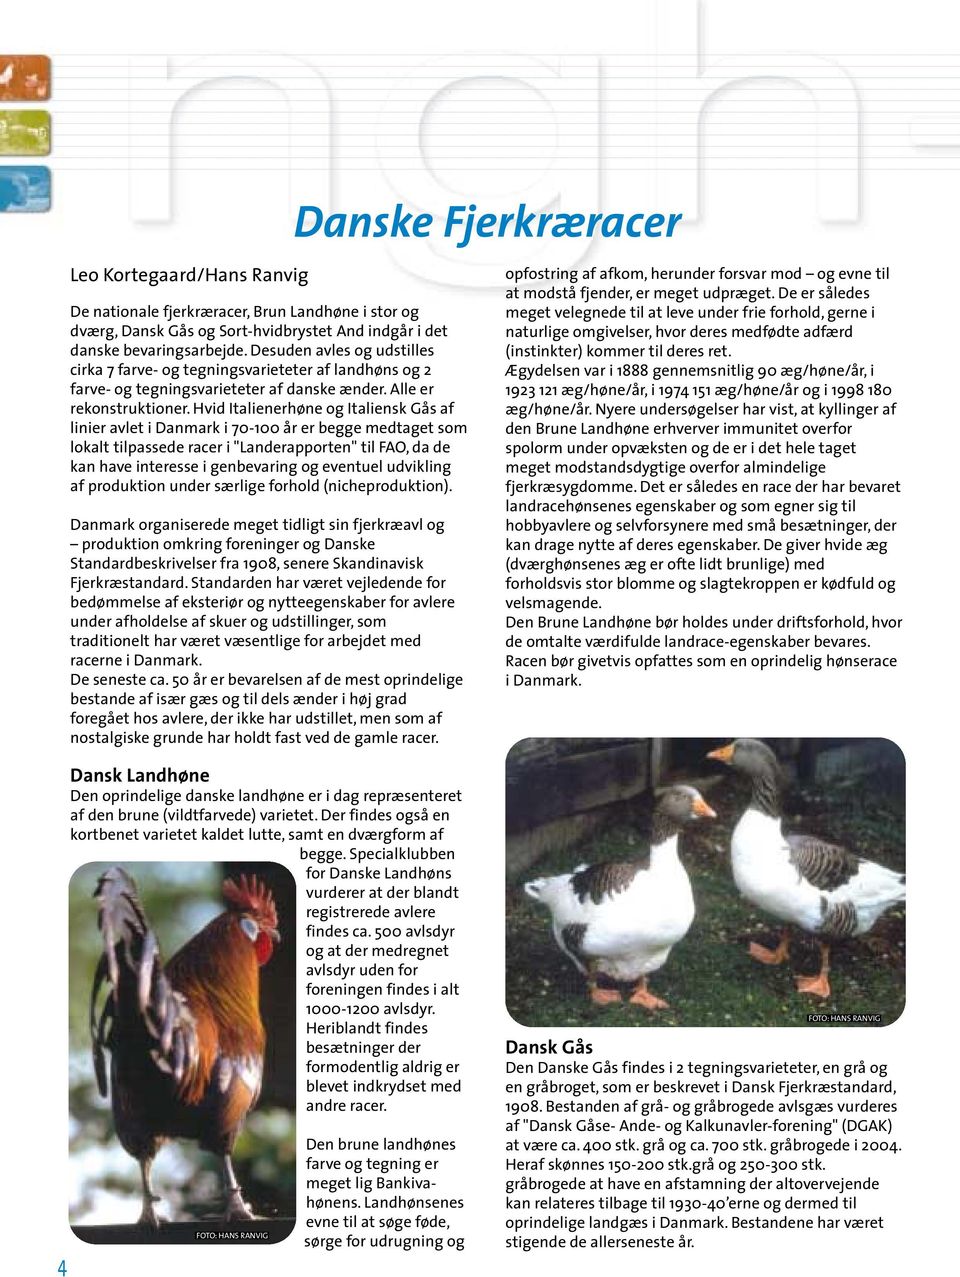 Hvid Italienerhøne og Italiensk Gås af linier avlet i Danmark i 70-100 år er begge medtaget som lokalt tilpassede racer i "Landerapporten" til FAO, da de kan have interesse i genbevaring og eventuel